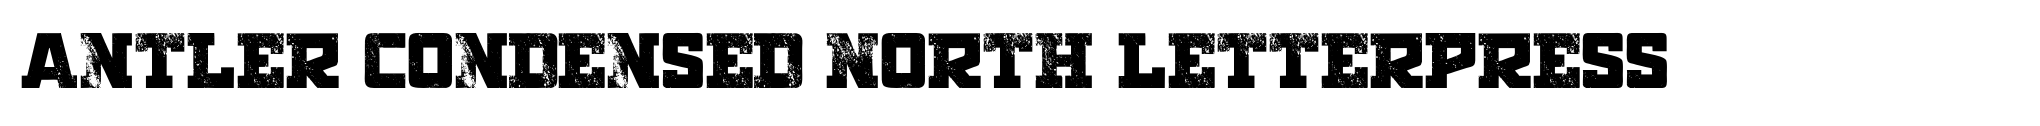 Antler Condensed North Letterpress image